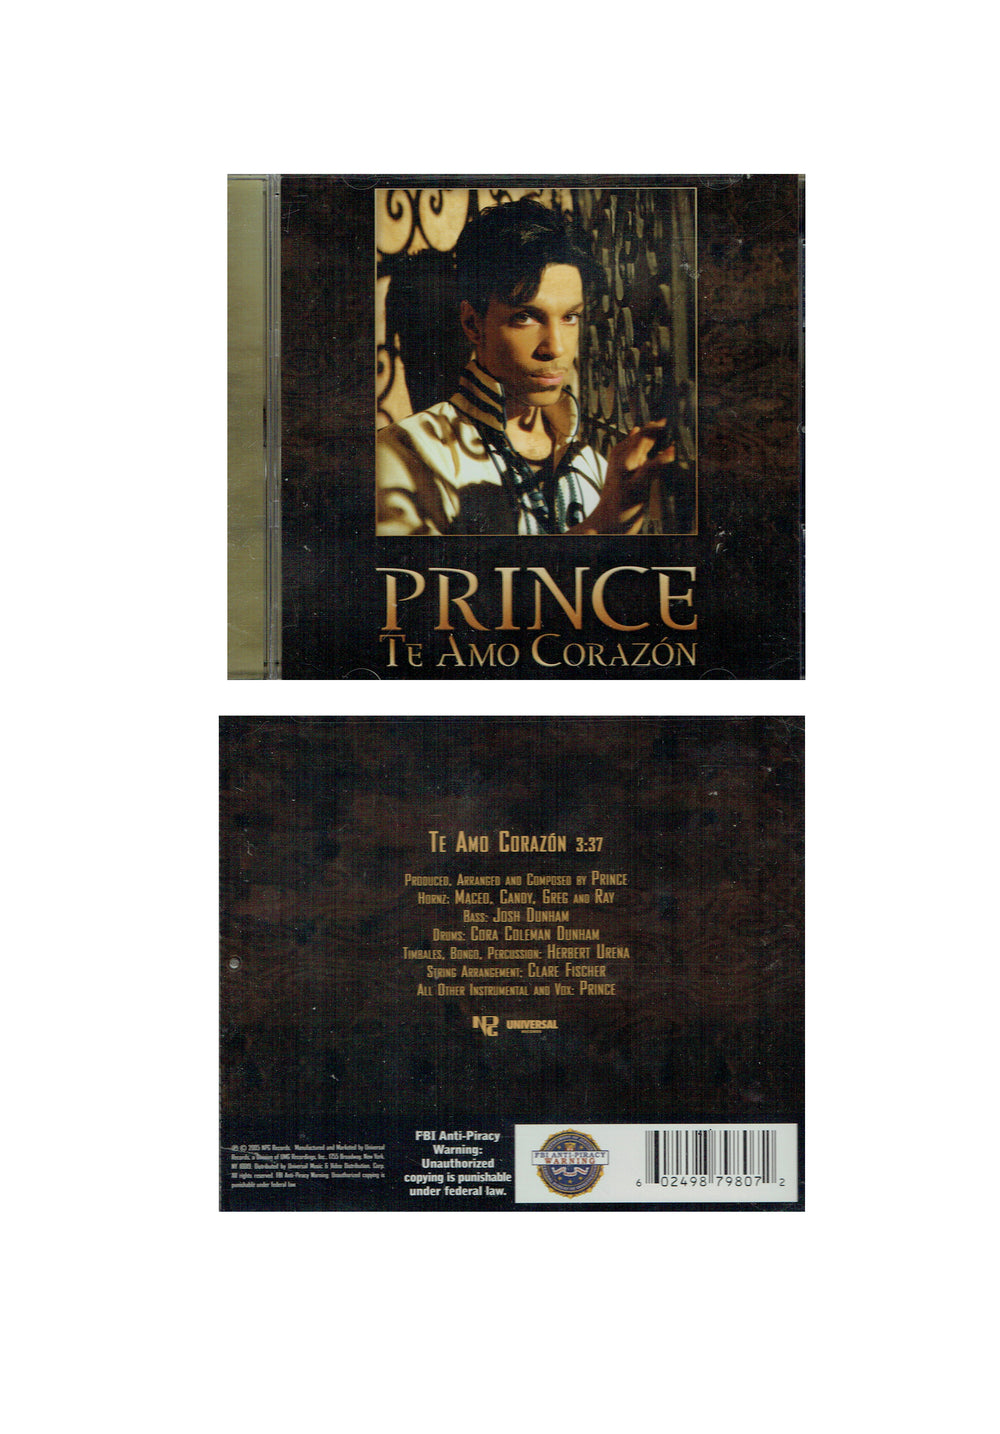 Prince – Te Amo Corazon CD Single Picture US Original 1 Track Preloved: 2005